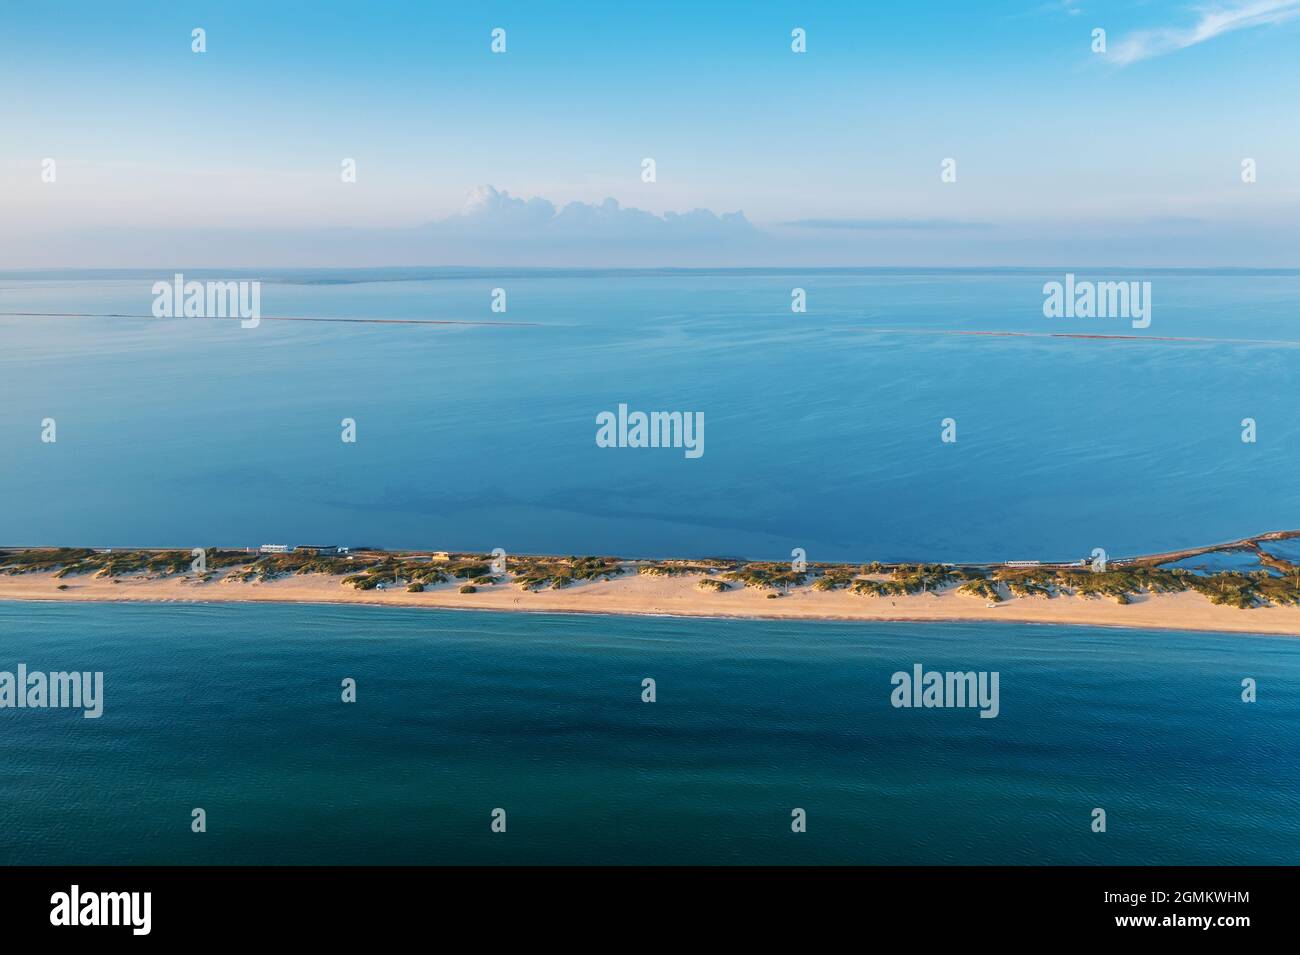 Lungo spit con bella spiaggia di sabbia tra mare e liman, vista aerea dal drone. Foto Stock